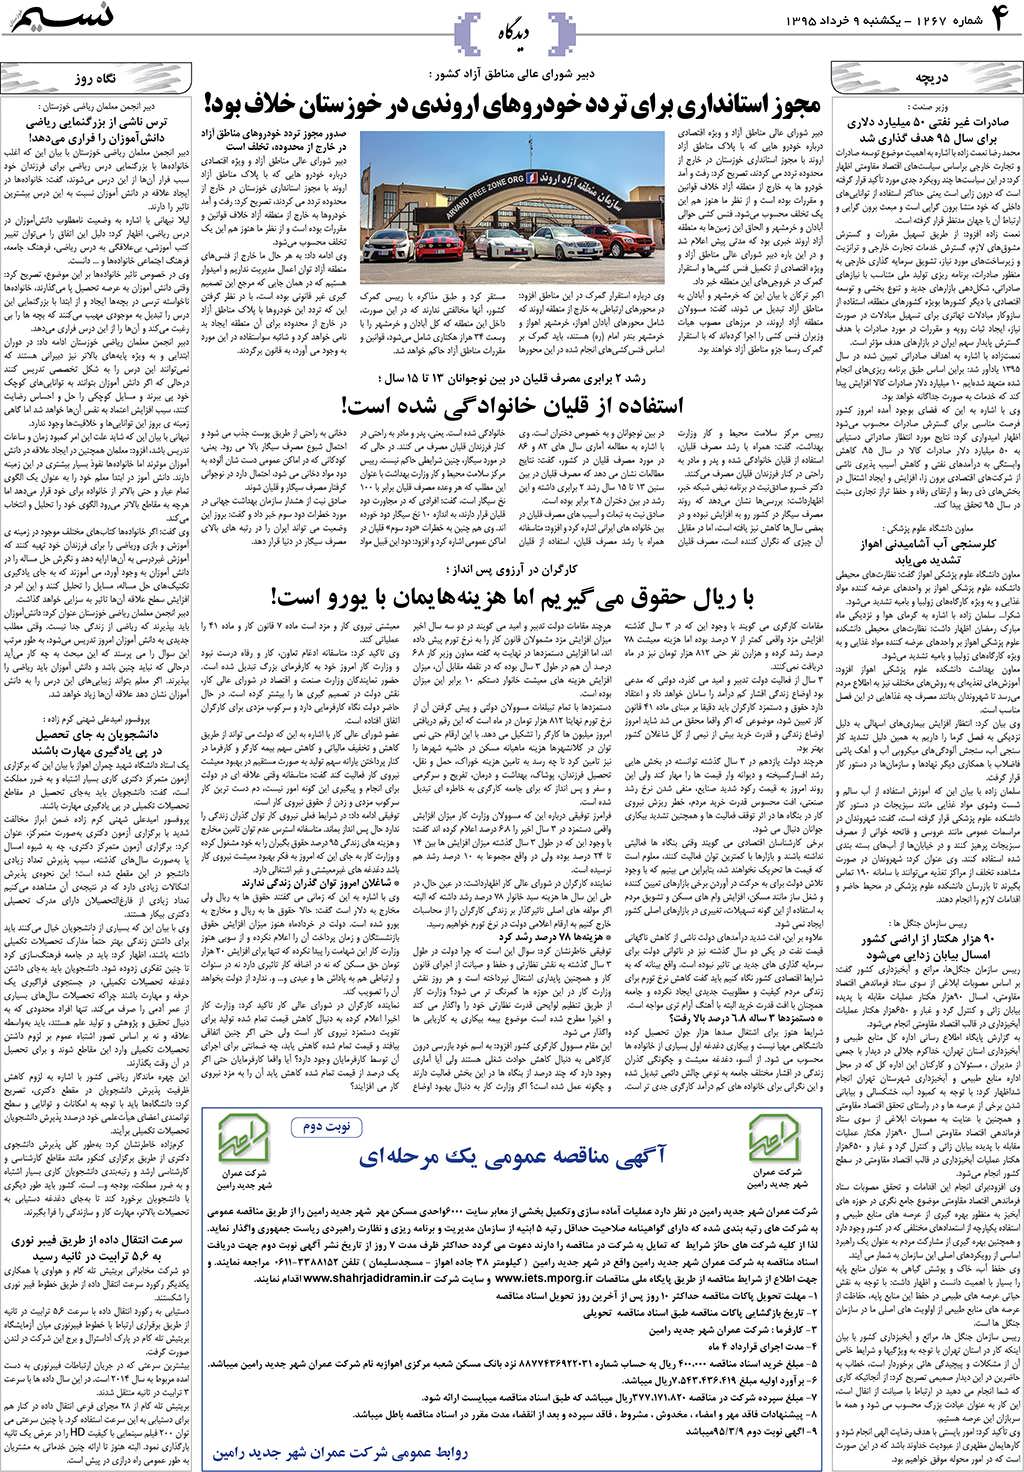 صفحه دیدگاه روزنامه نسیم شماره 1267